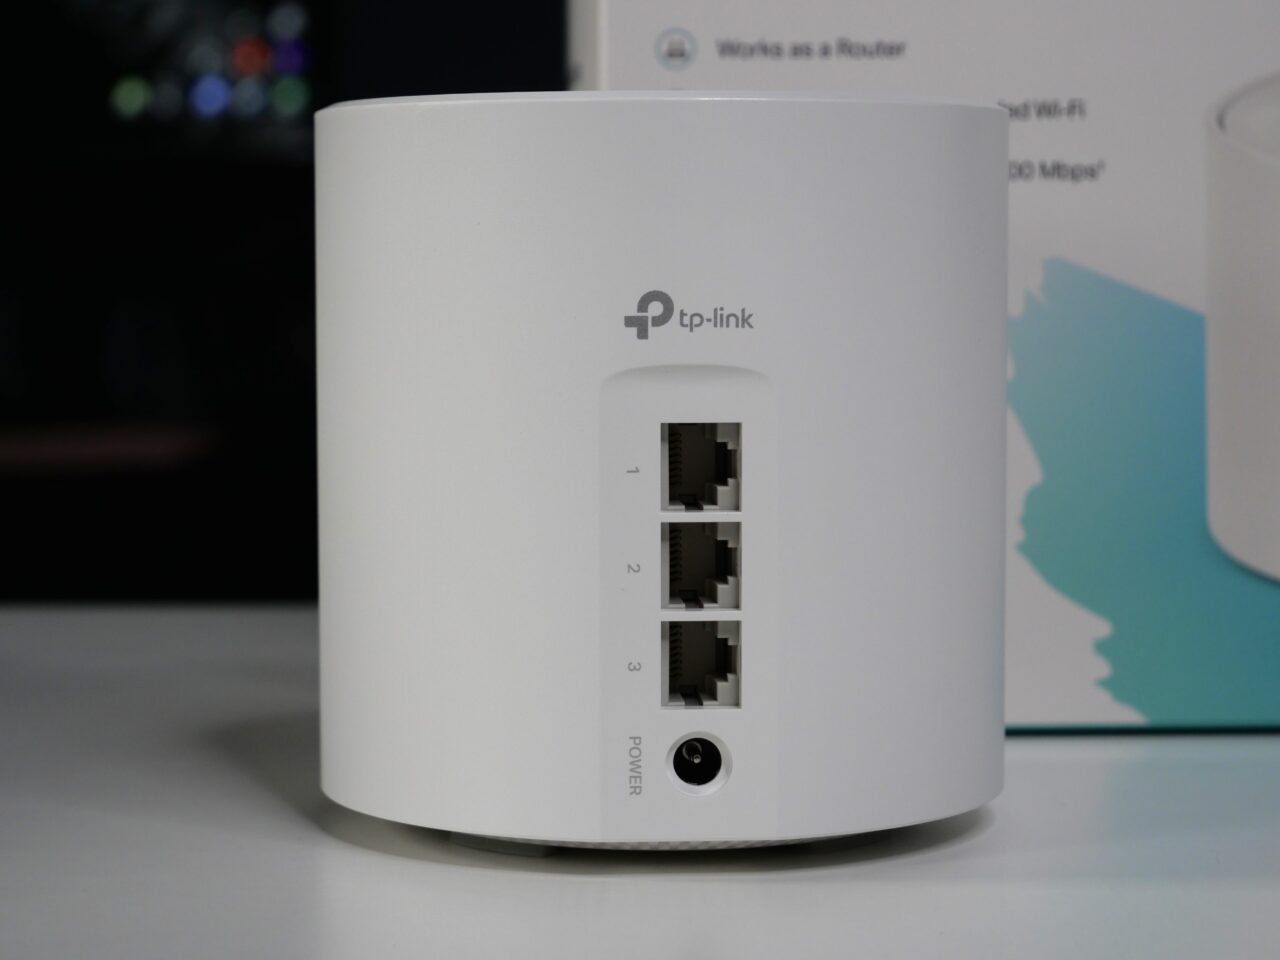 Biały router TP-Link stojący na blacie z widocznymi trzema portami Ethernet i przyciskiem zasilania.